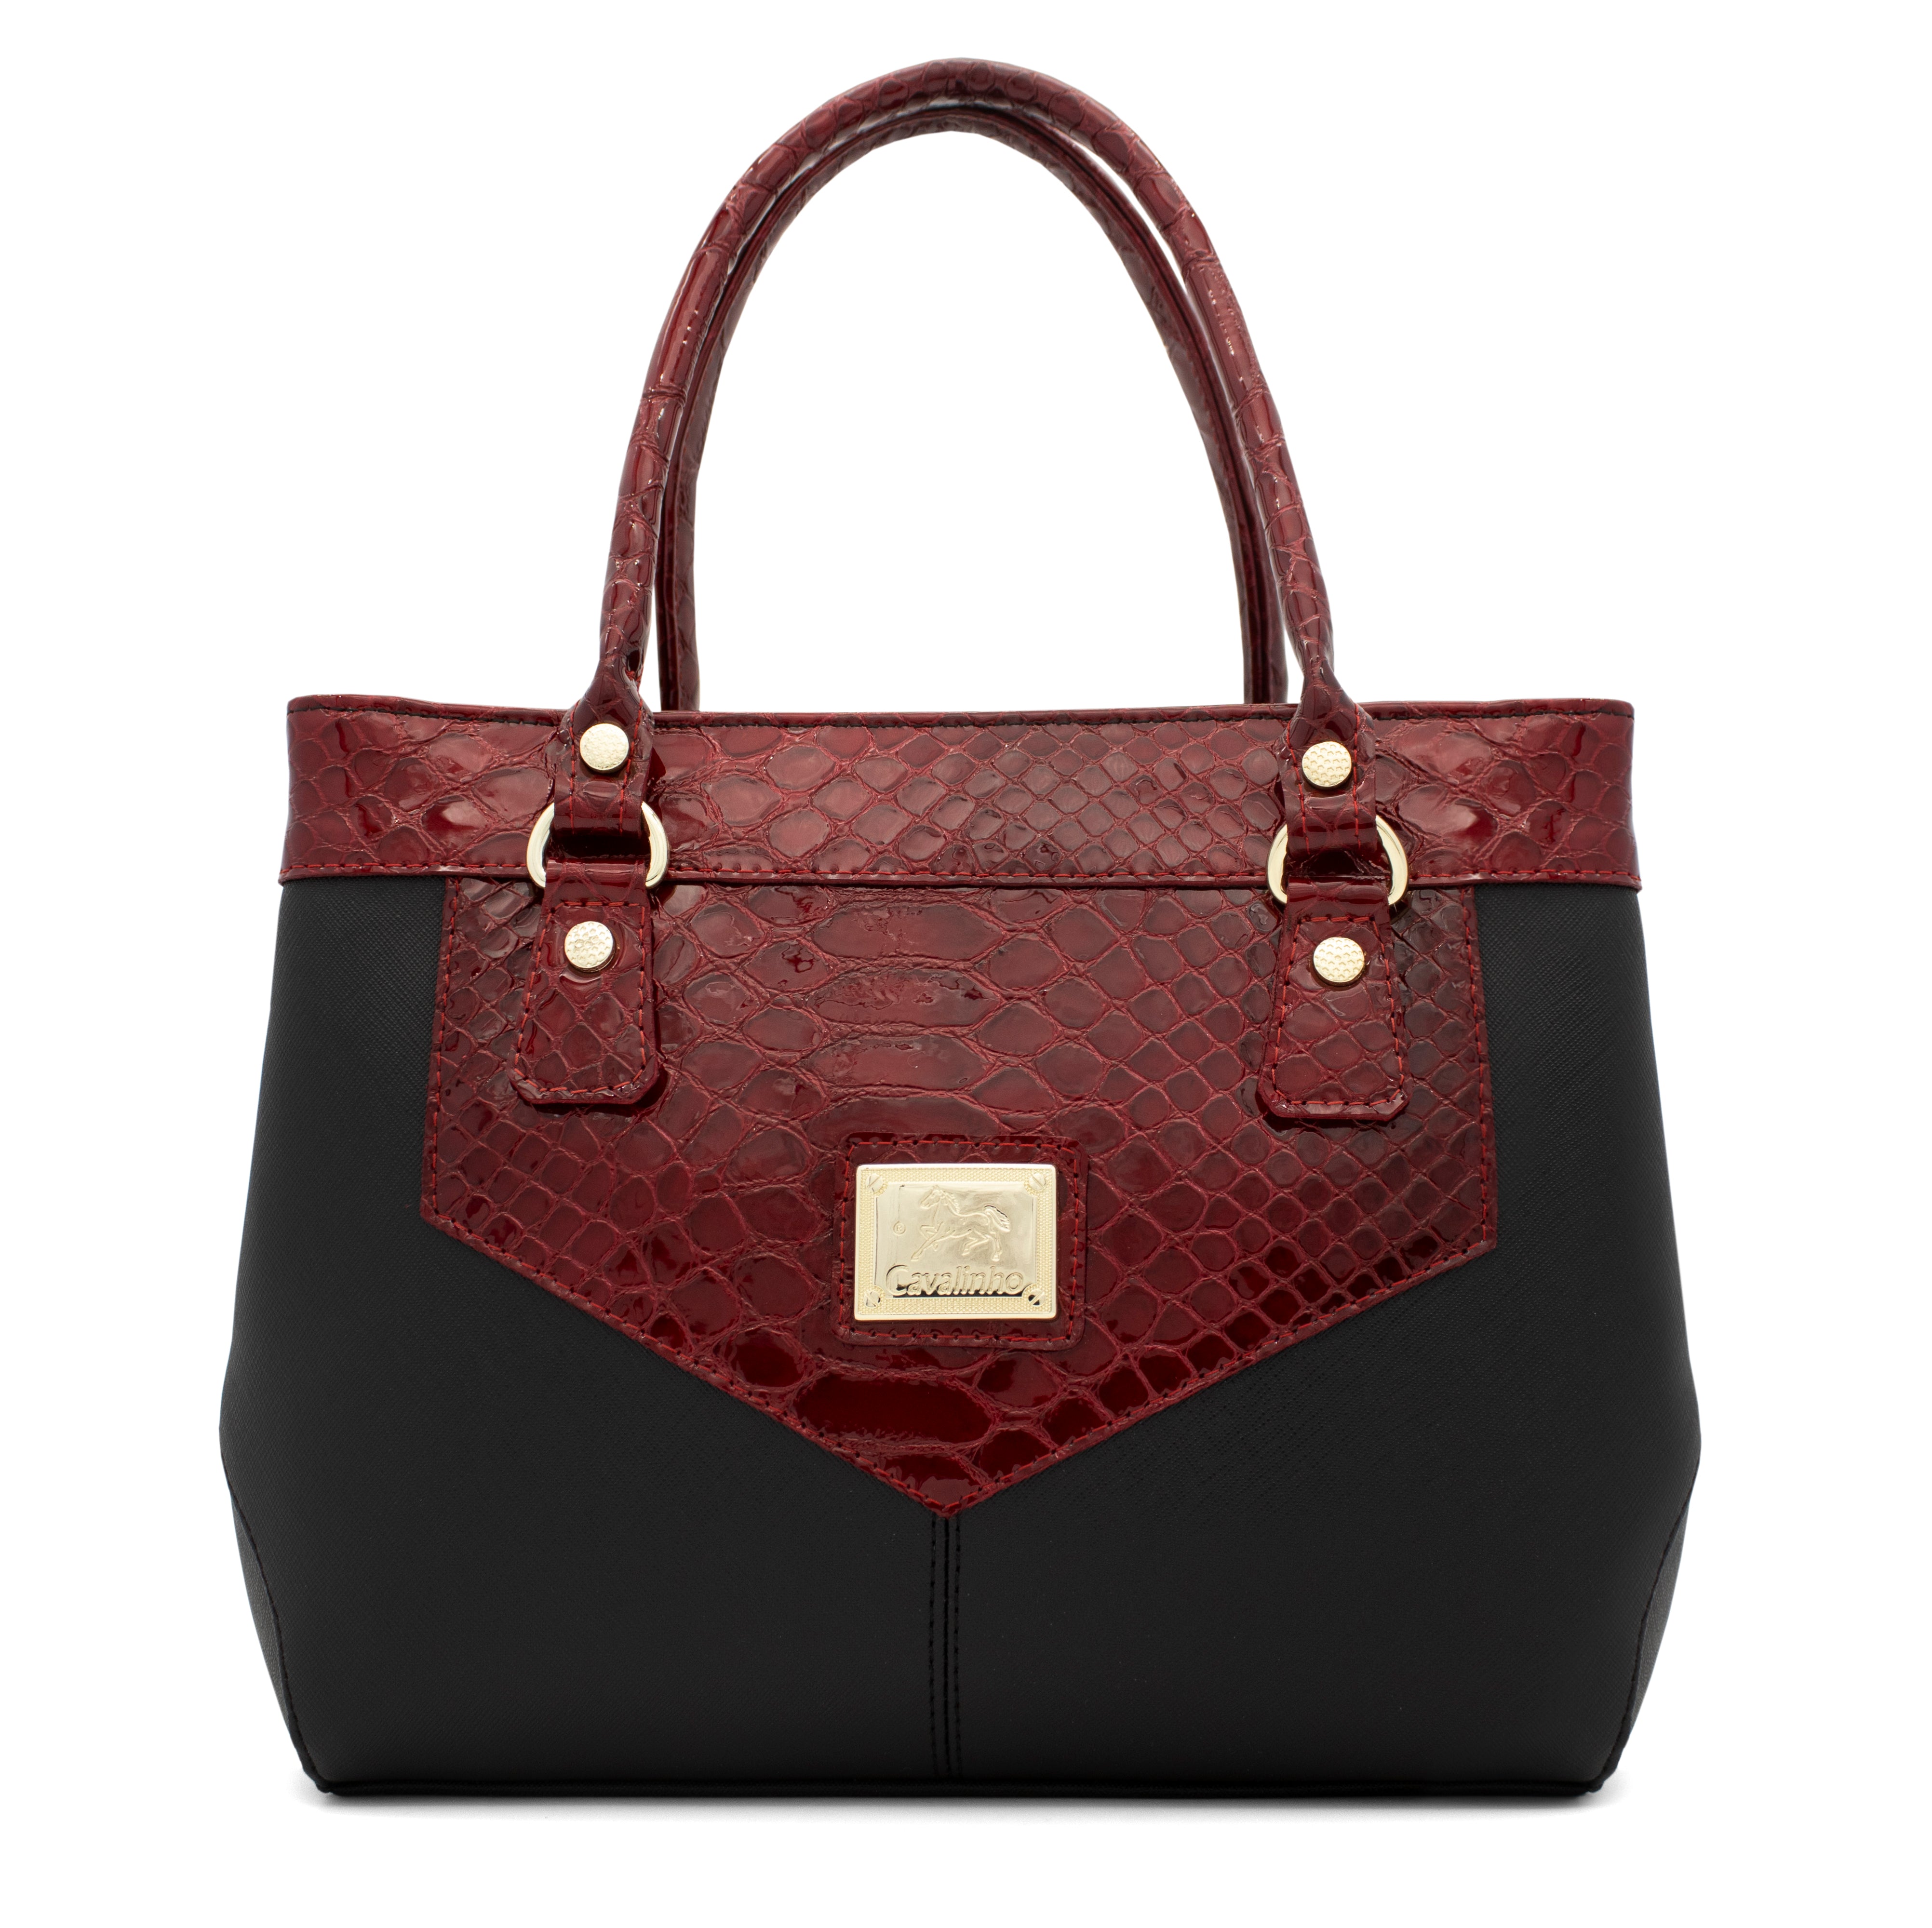 Cavalinho Cherry Blossom Handbag SKU 18810129.23 #color_black / red